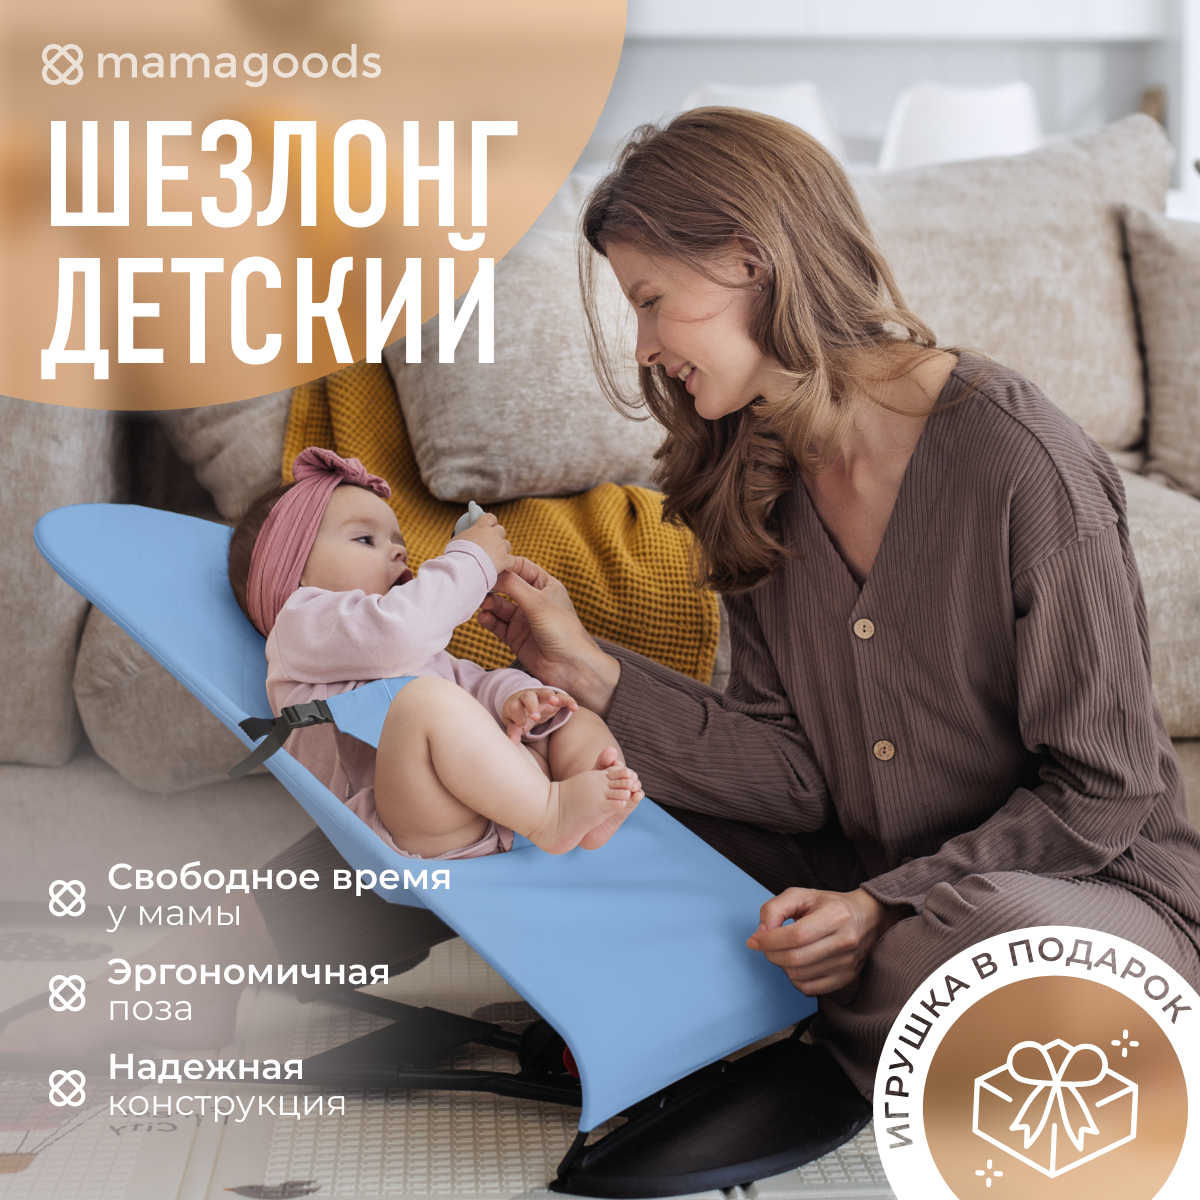 Детский складной шезлонг Mamagoods для новорожденных от 0 кресло качалка для малышей - фото 2